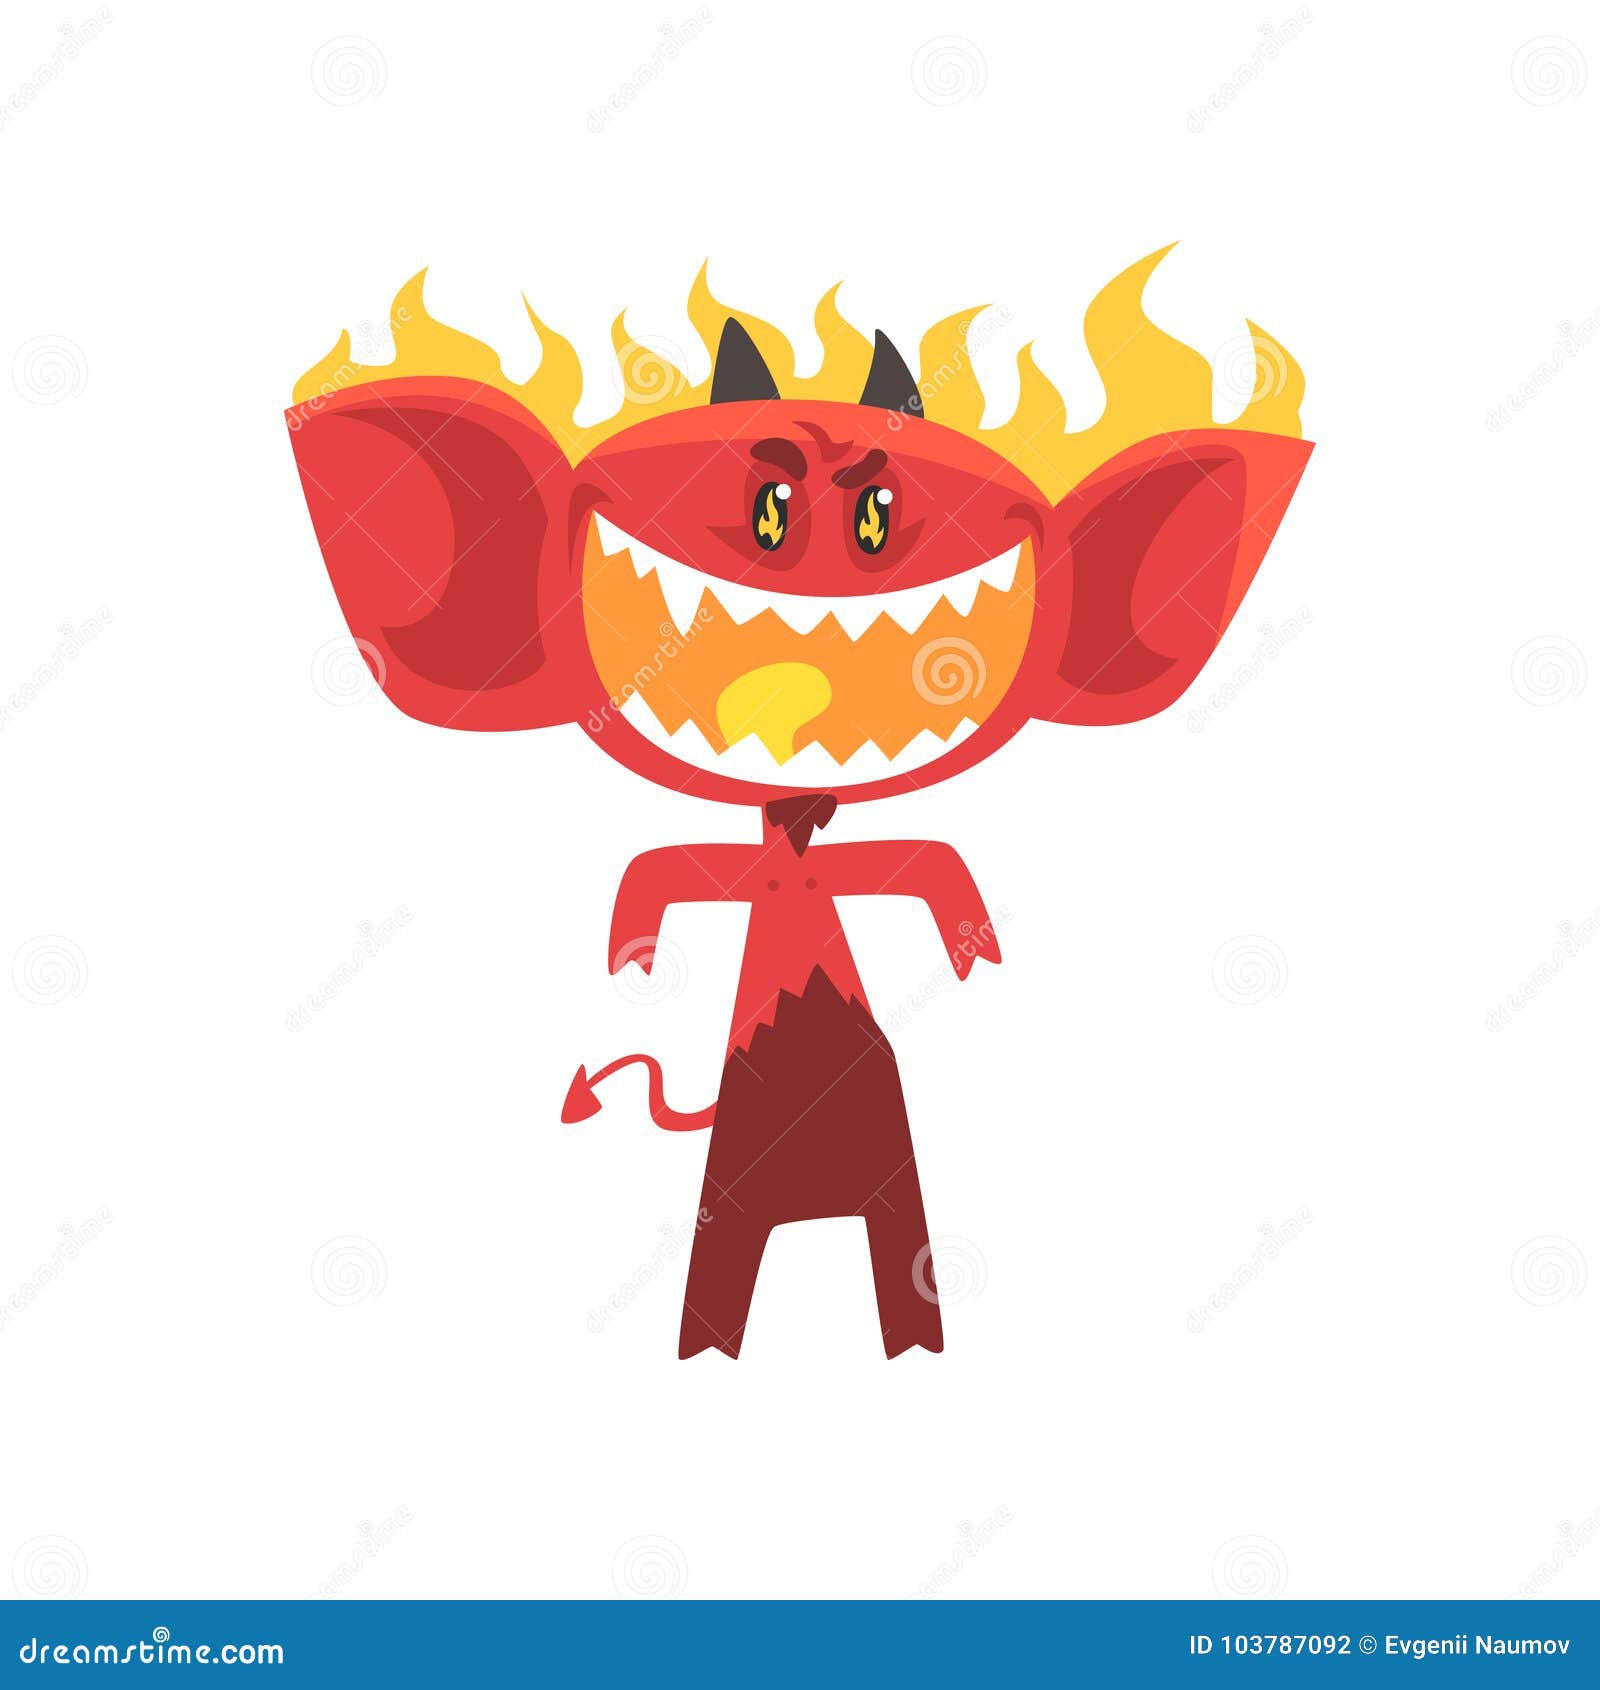 Desenho animado pequeno demônio fogo imagem vetorial de lineartestpilot©  62071517